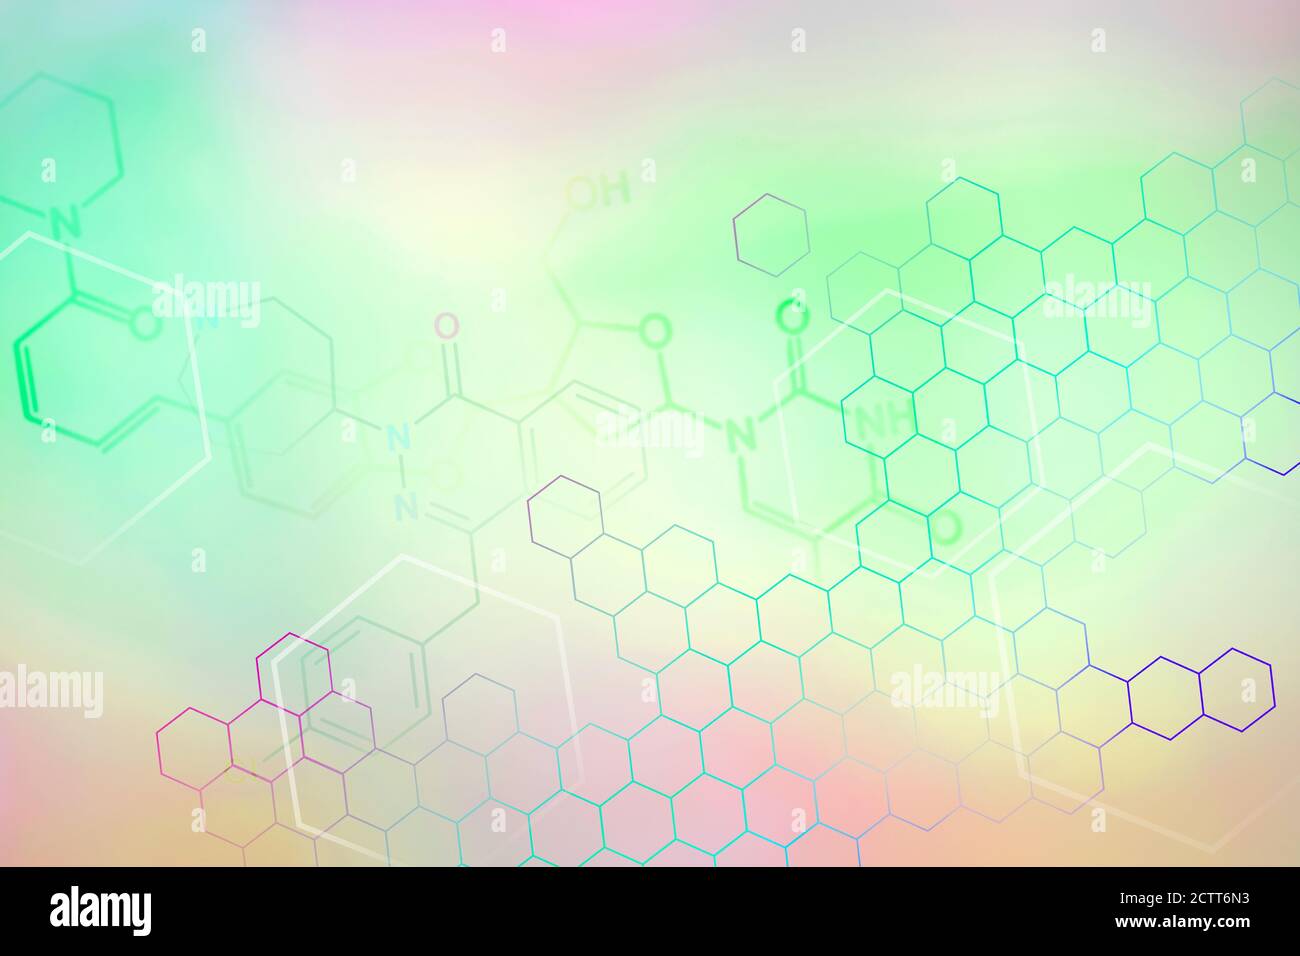 Símbolos químicos sobre fondo de color pastel Foto de stock